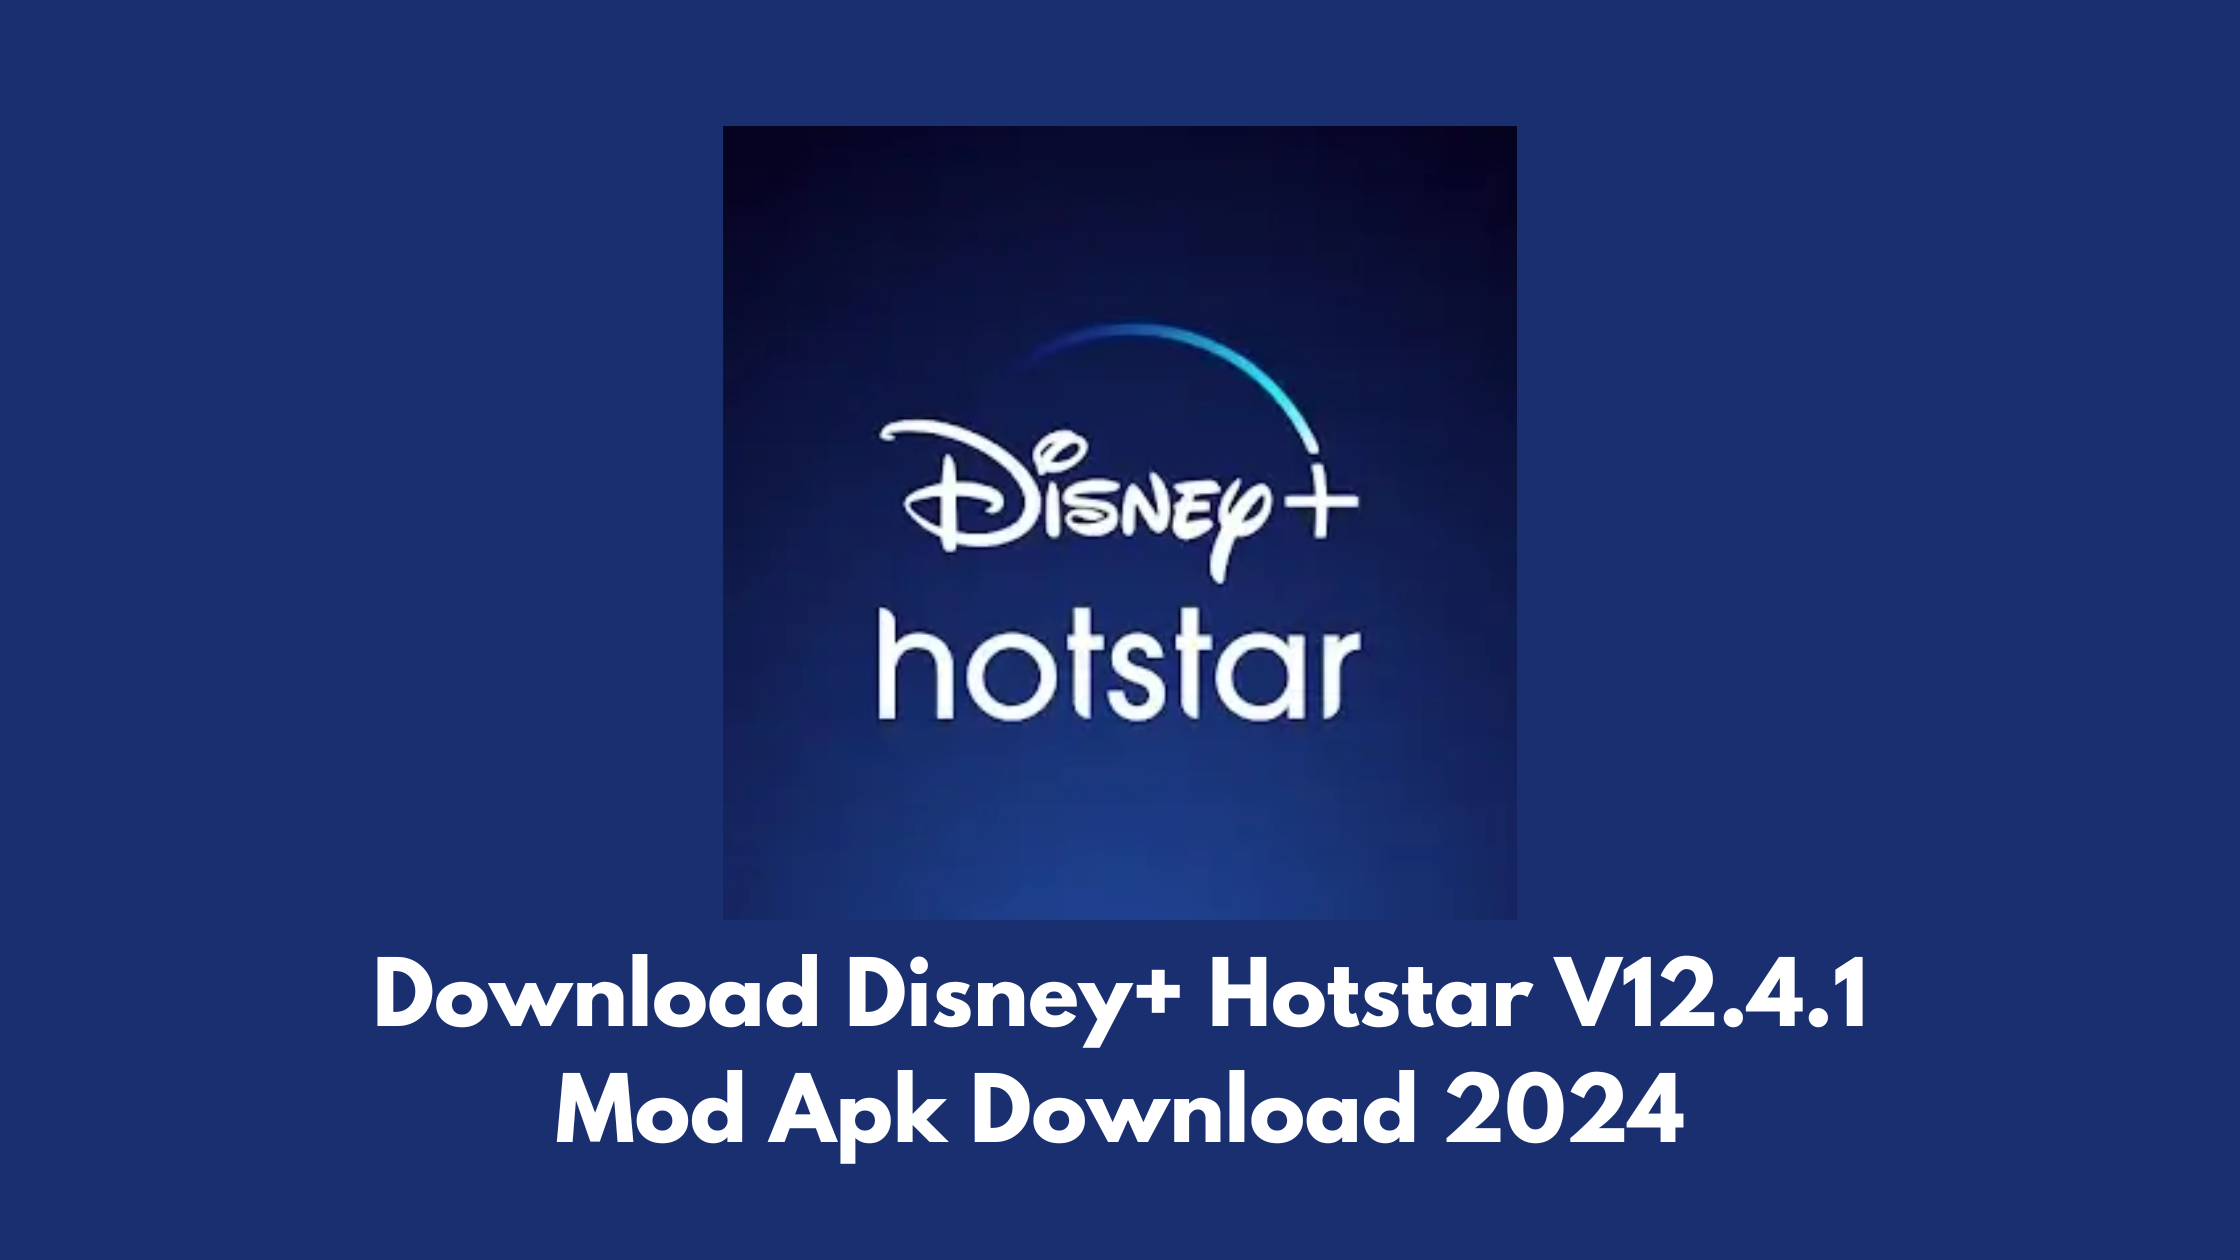 Download Disney+ Hotstar V12.4.1 Mod Apk Download 2024,